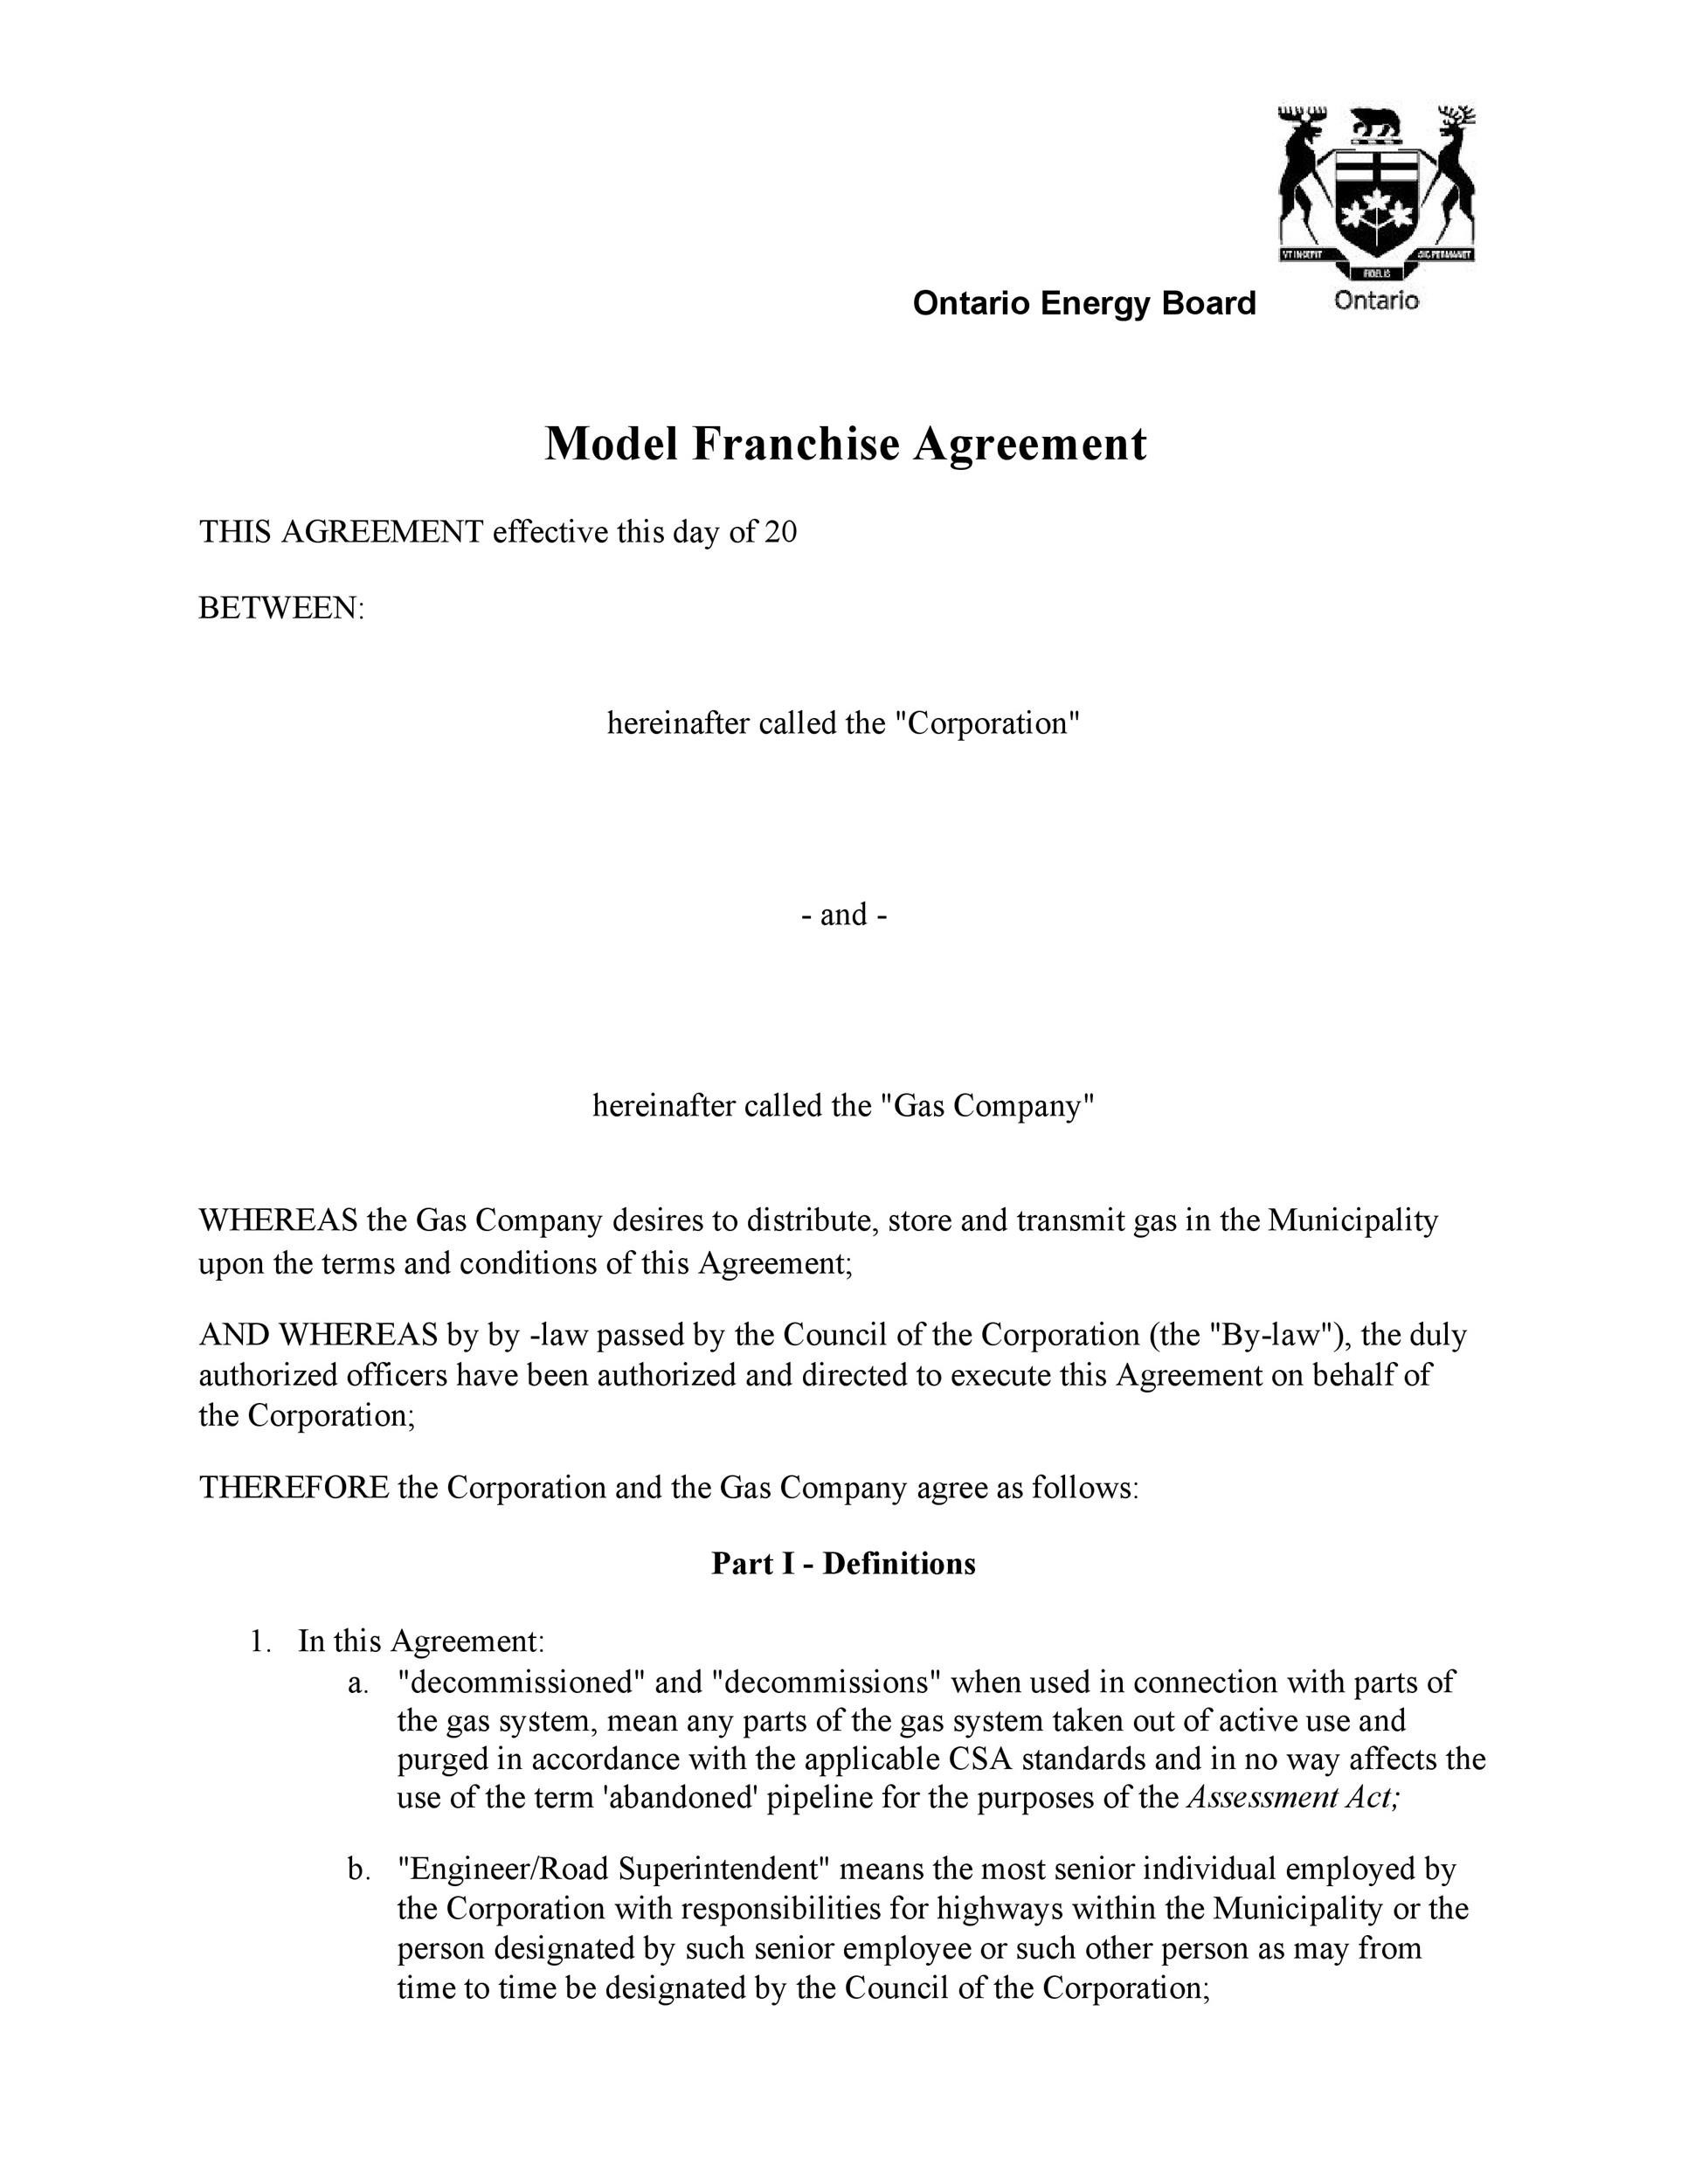 Fresh Franchise Agreement Termination Letter Sample